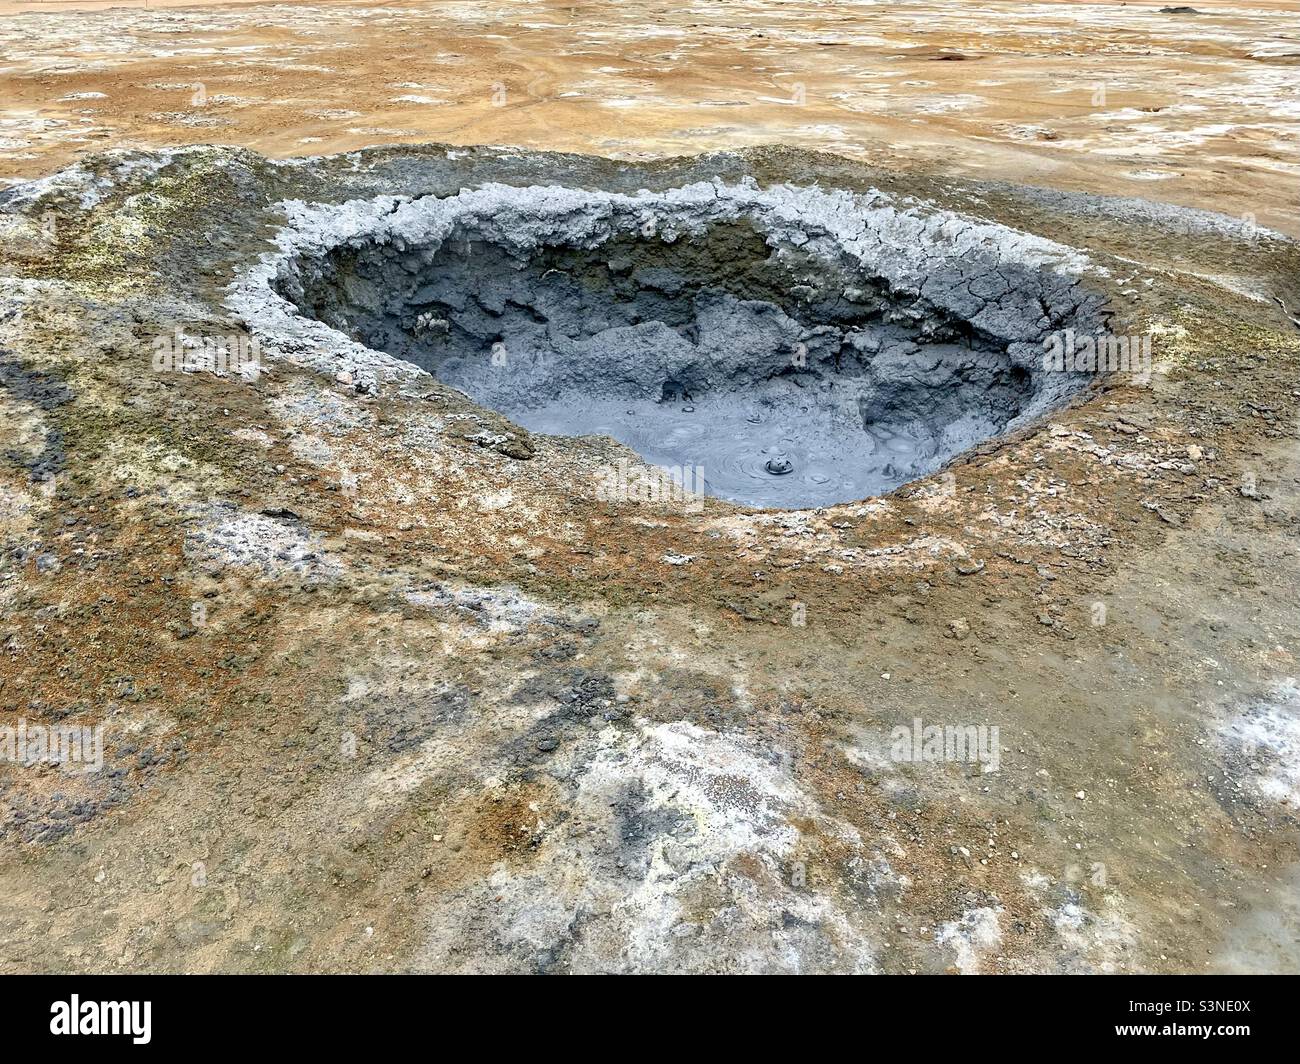 Big bubbling mud pot at Námaskard geothermal area in Iceland Stock Photo